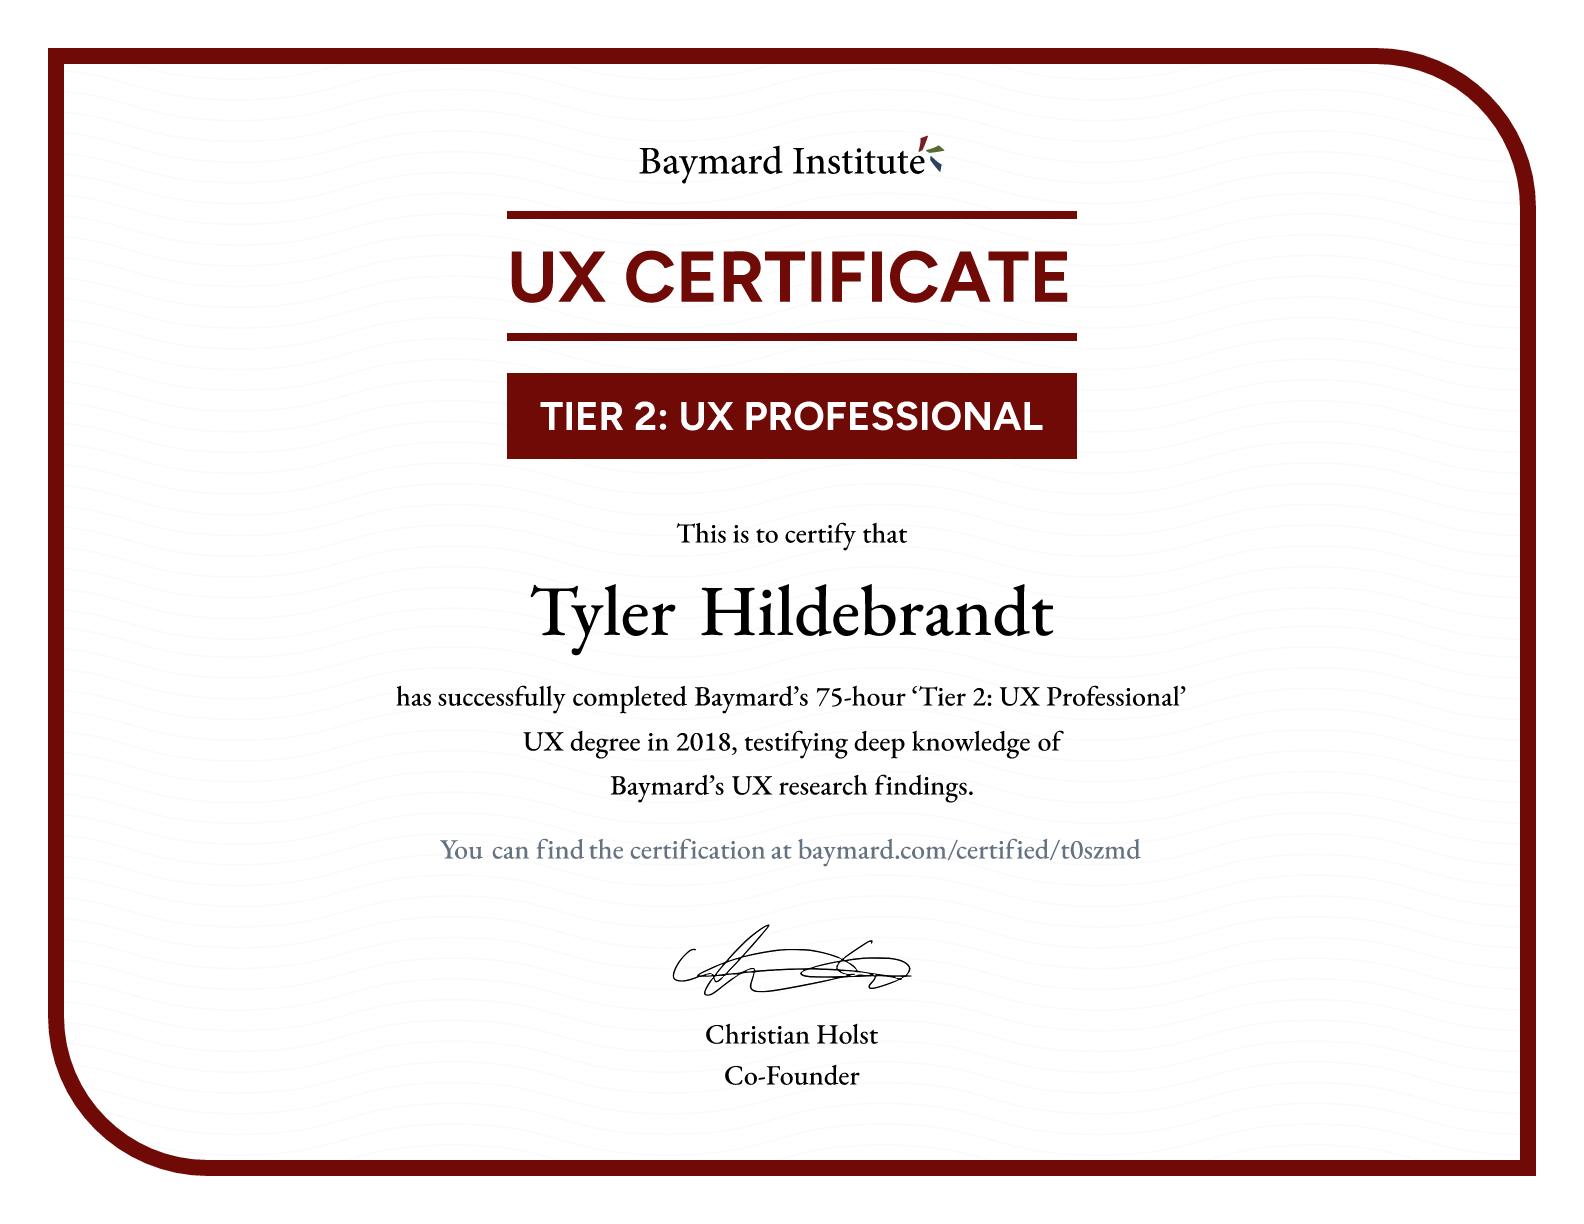 Tyler Hildebrandt’s certificate